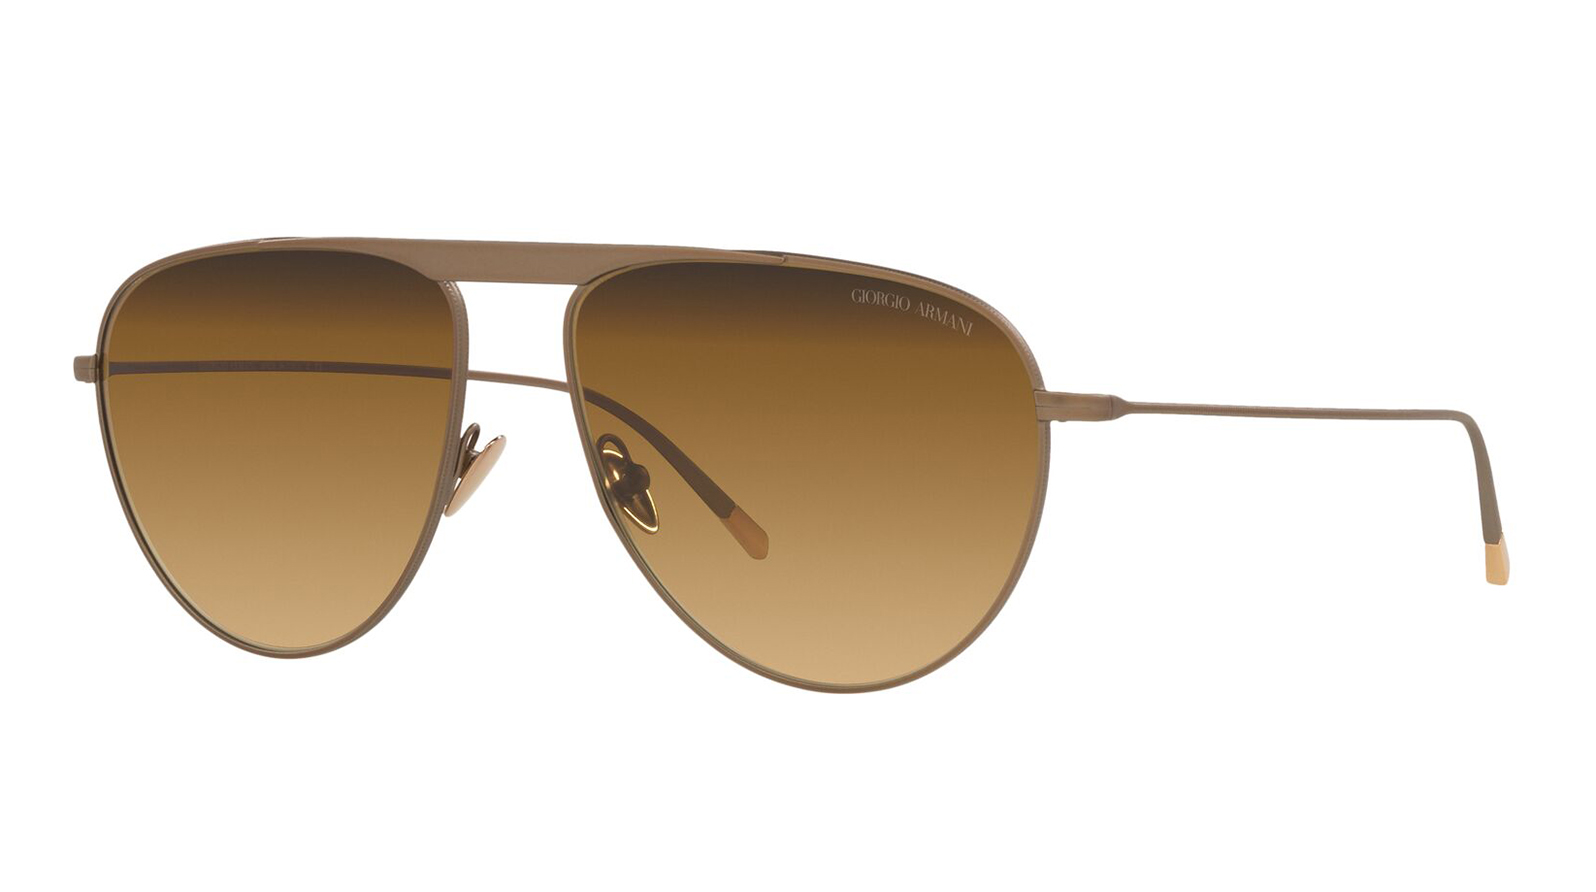 Giorgio Armani 6131 30062L мужские поляризованные солнцезащитные очки солнцезащитные очки для рыбалки поляризованные очки с защитой от ультрафиолета